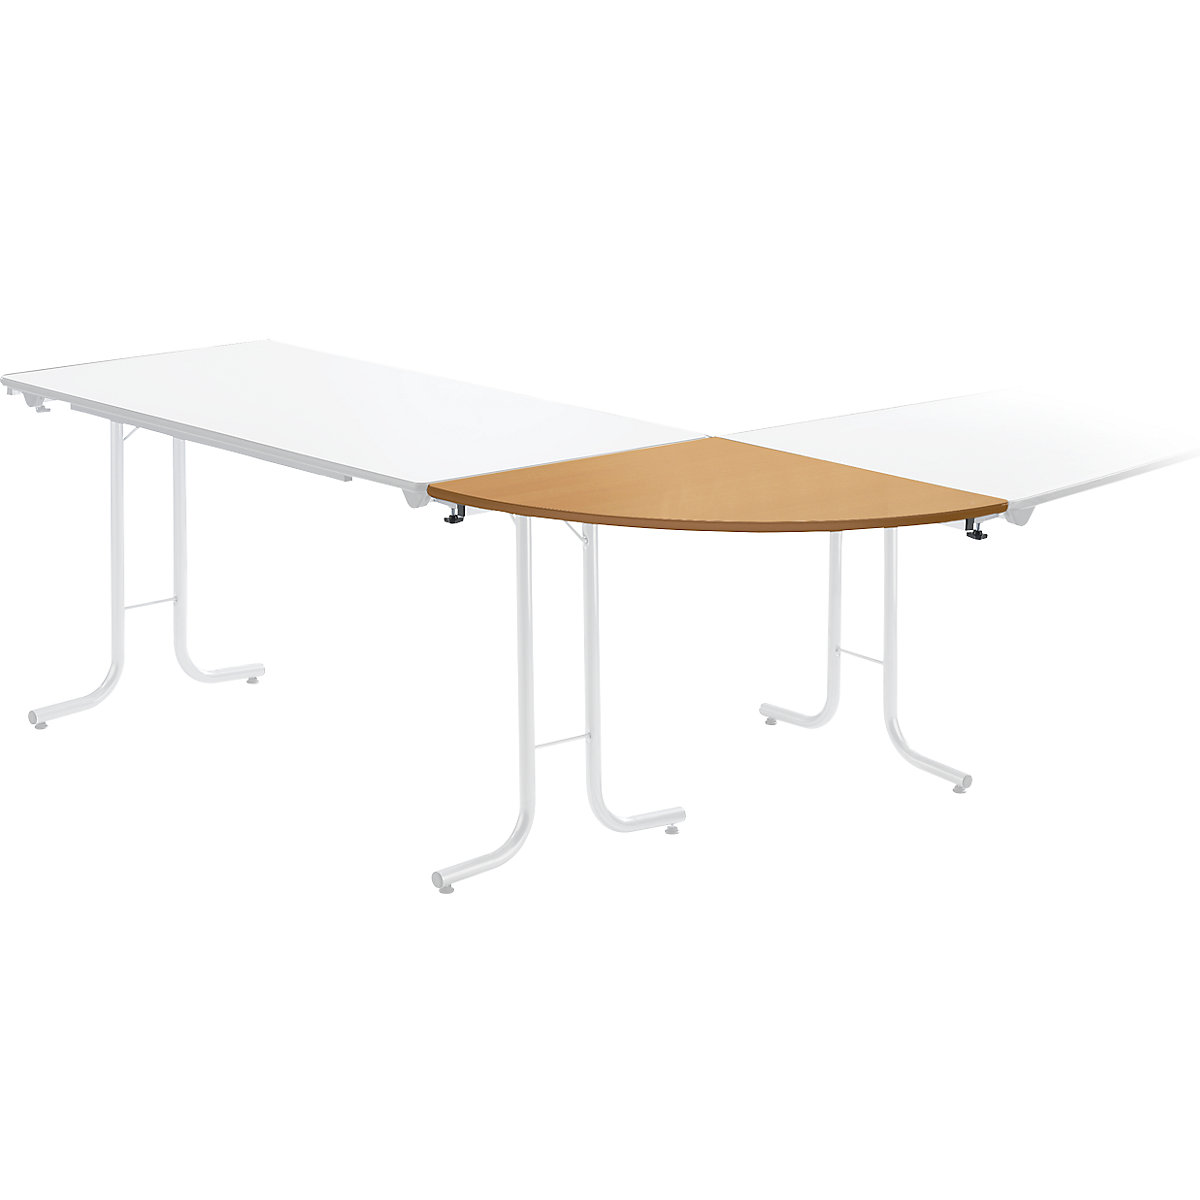 Dogradni stol za sklopivi stol